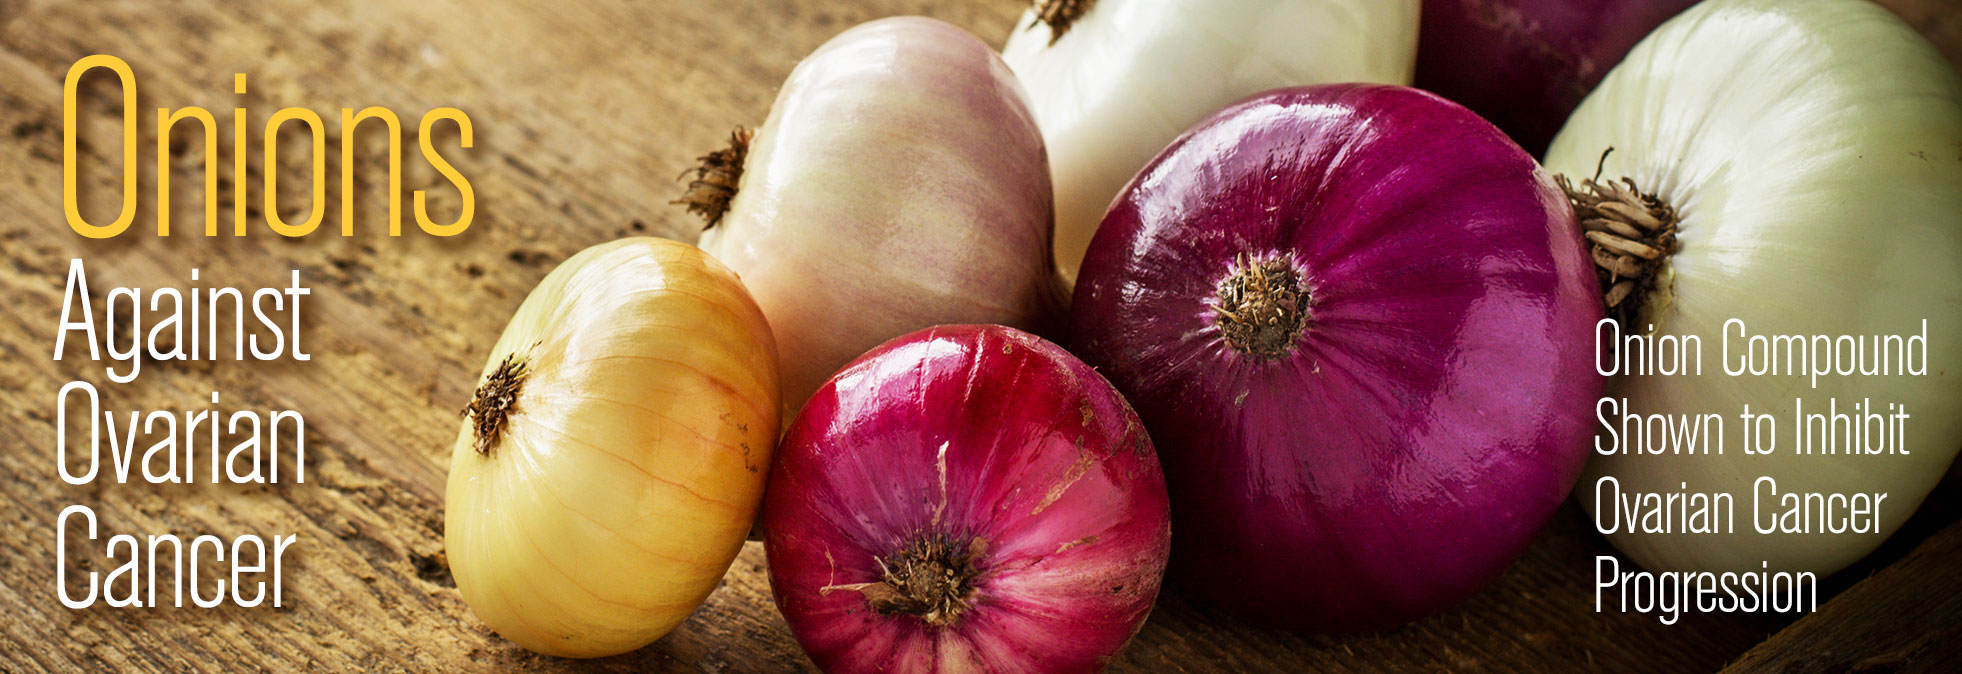 Onions Against Ovarian Cancer